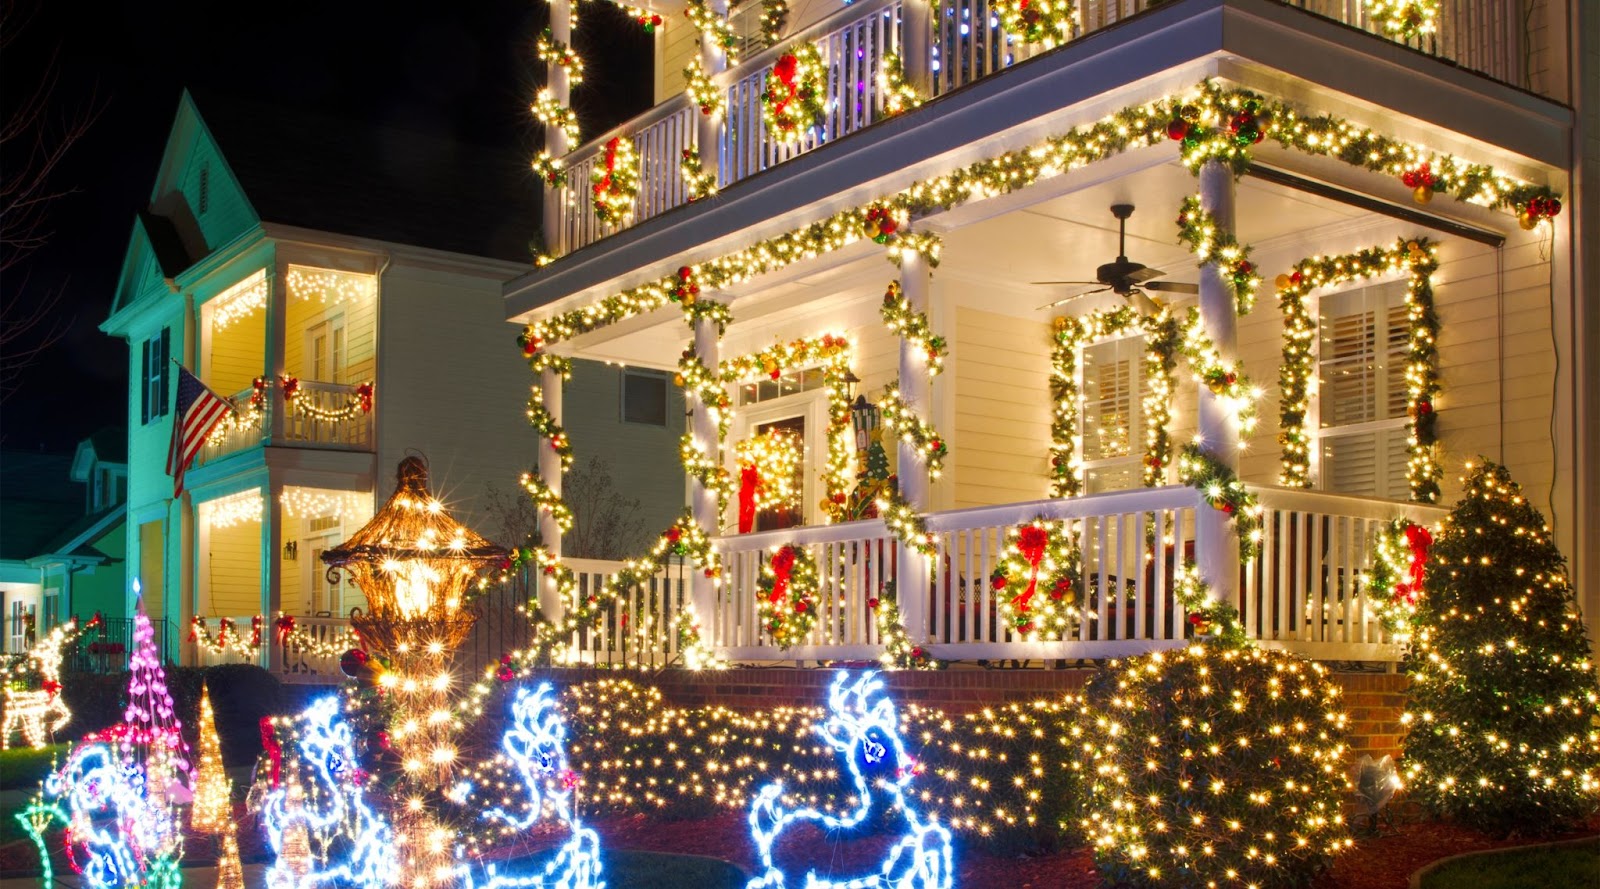 Christmas Lights on Houses